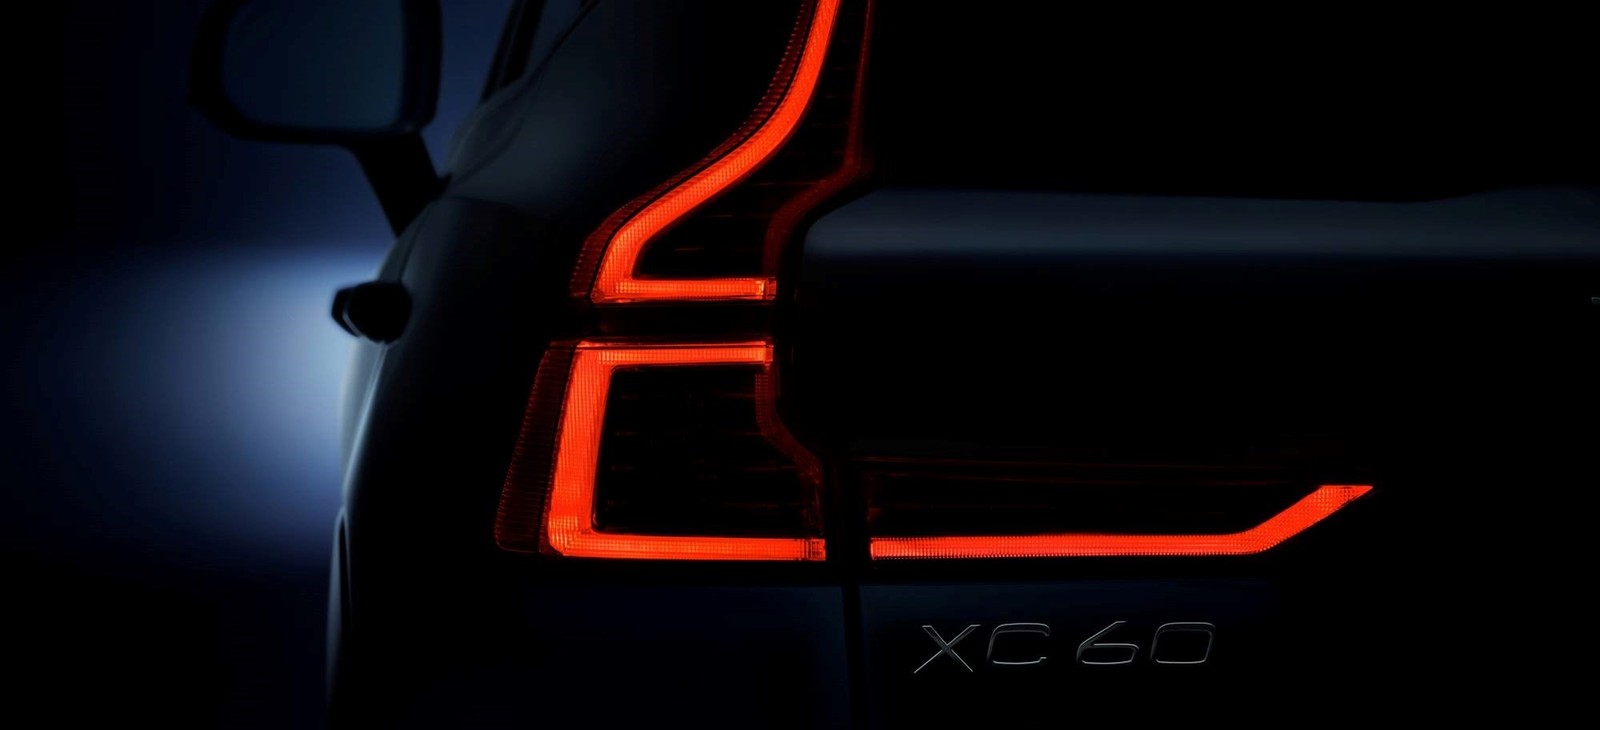 Teaser do novo Volvo XC60 (Foto: Divulgação)